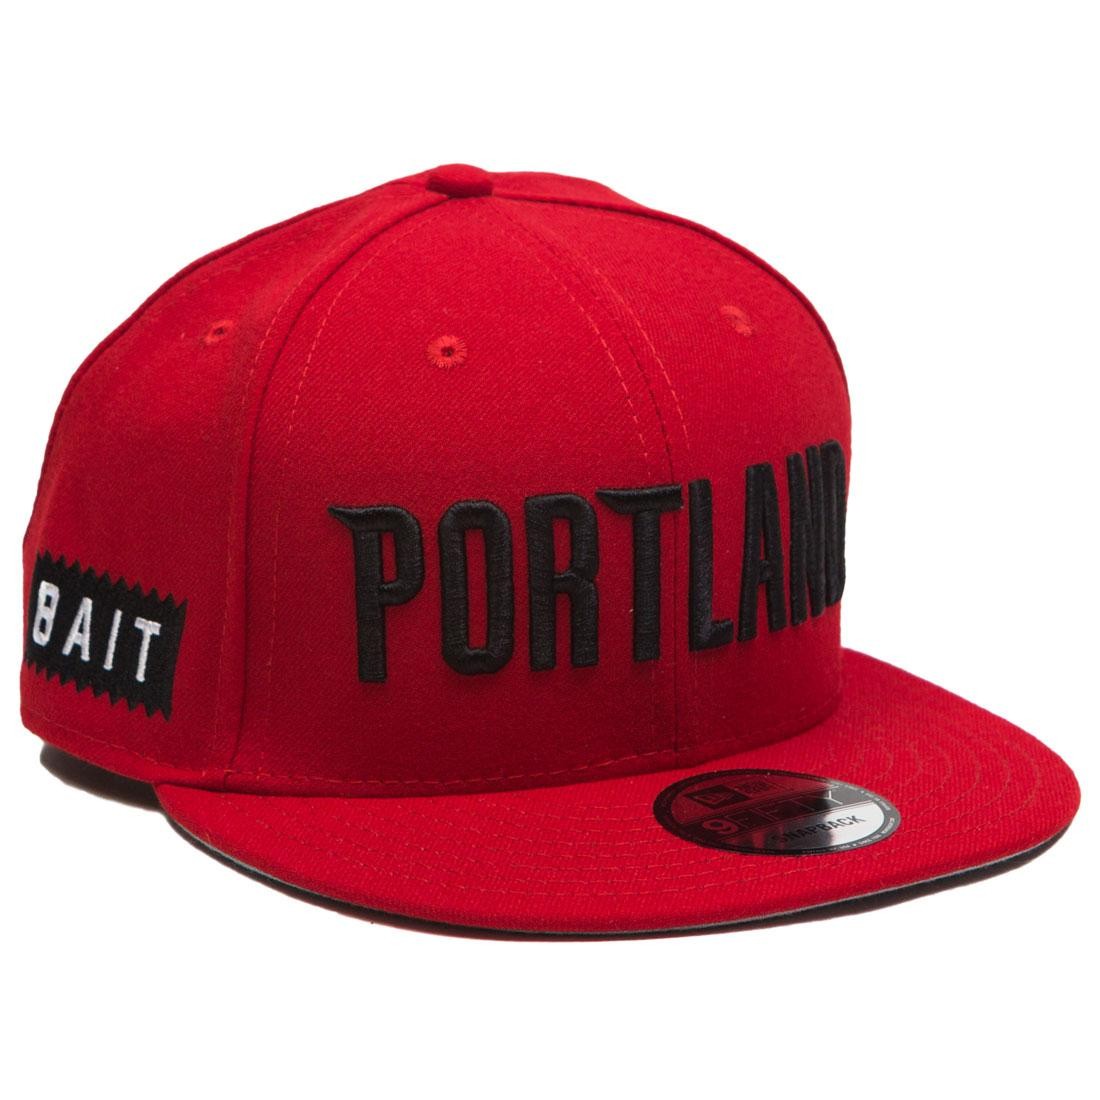 Cheap Urlfreeze Jordan Outlet x NBA X New Era 9Fifty Portland Trail Blazers Alt OTC Snapback cap NBA (red)